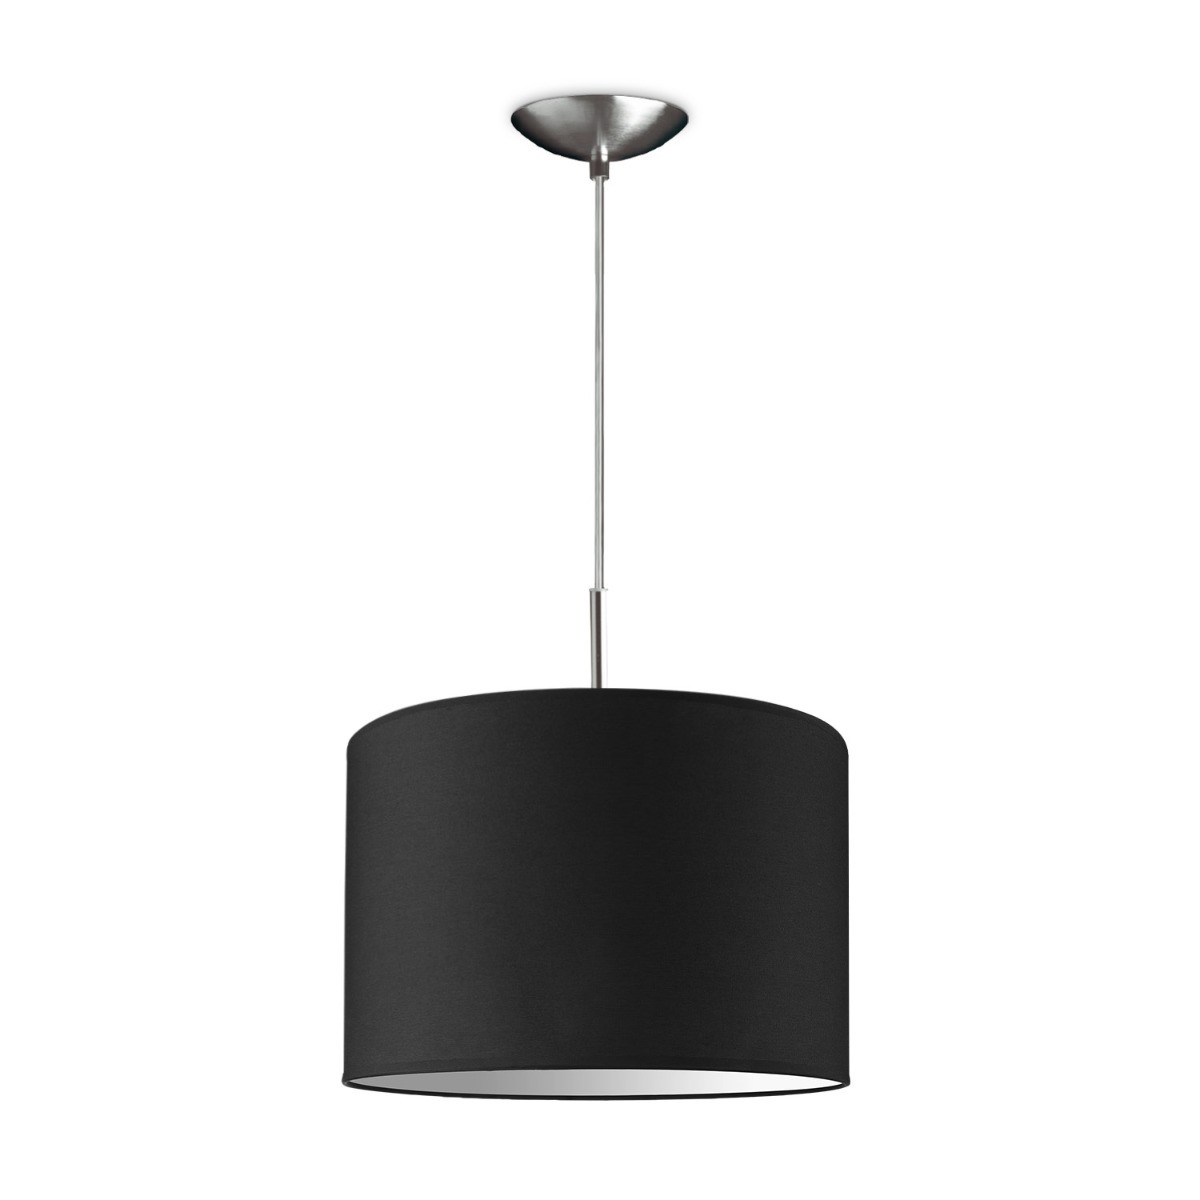 Light depot - hanglamp tube deluxe bling Ø 30 cm - zwart - Outlet